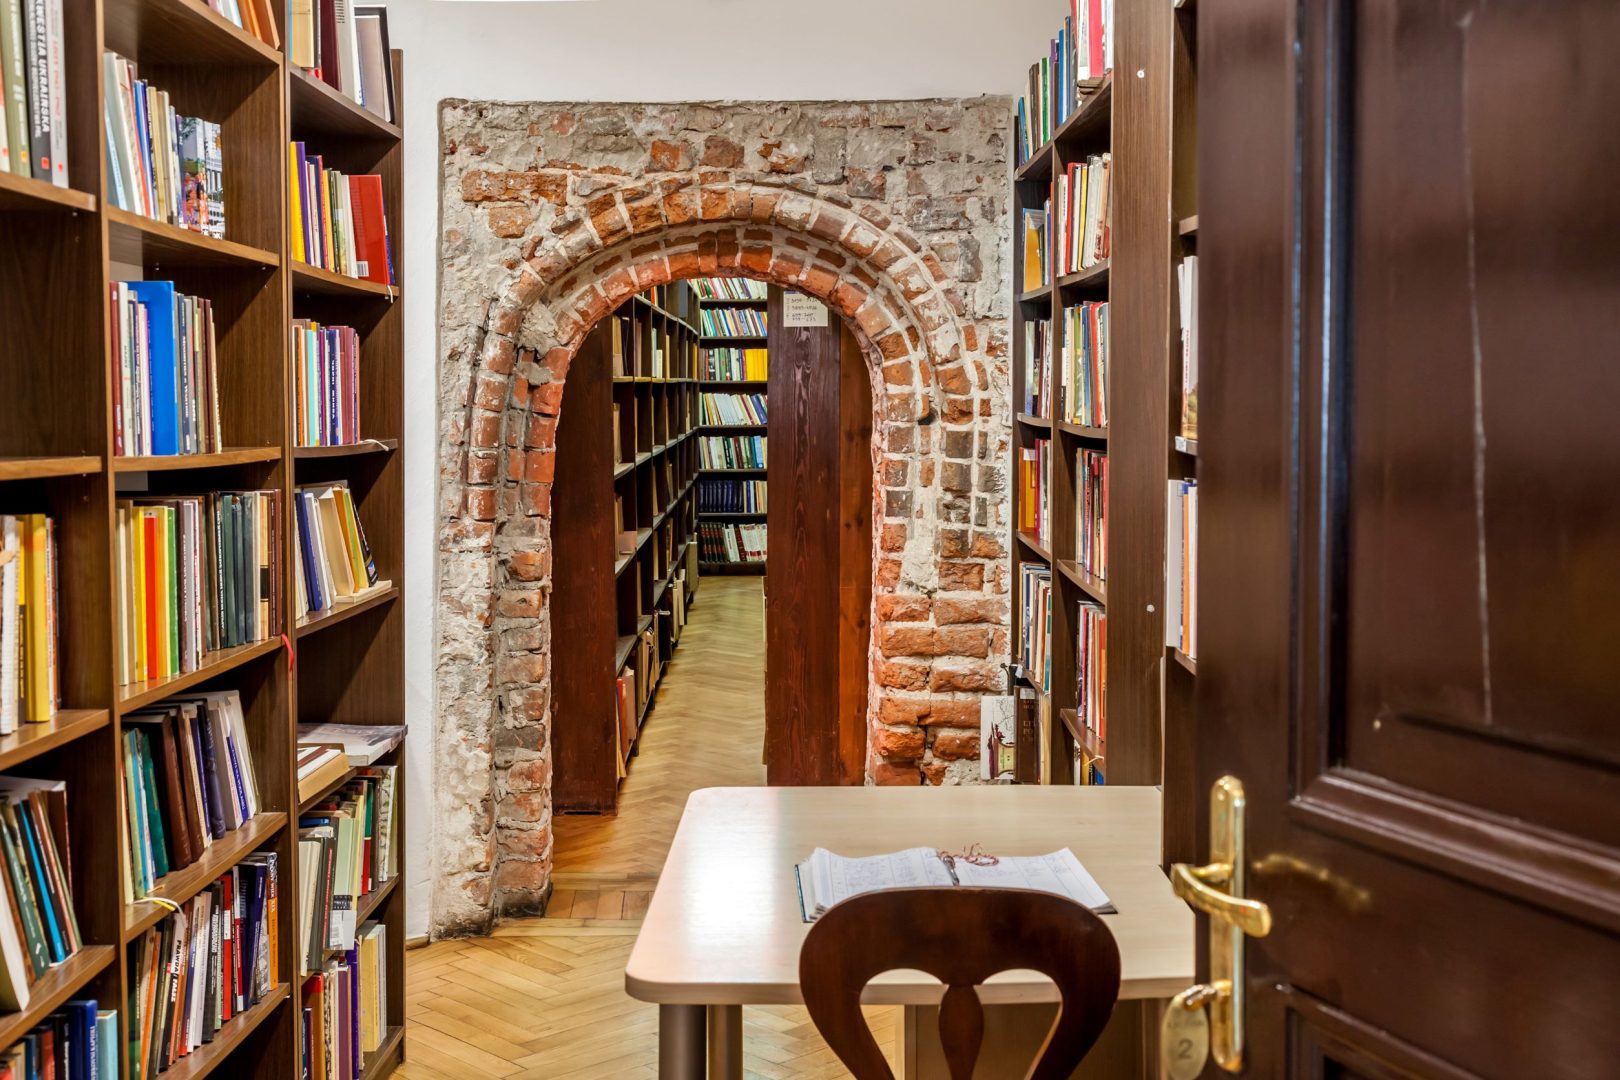 Przejście między regałami z książkami, w środku ceglany portal, pod którym przechodzi się do dalszych pomieszczeń